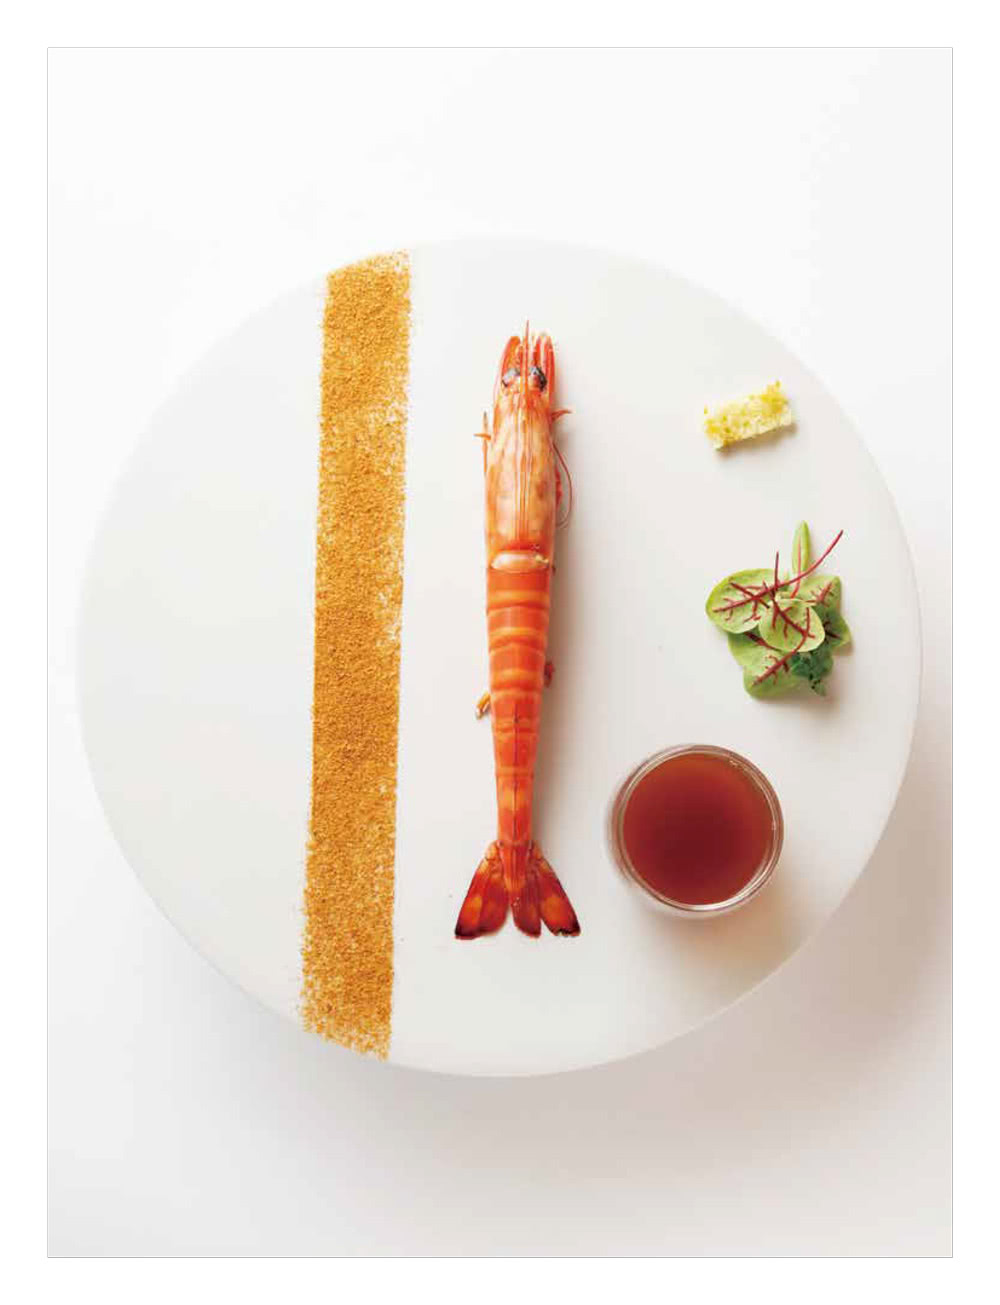 海鮮料理創意技法：頂級主廚無國界海味饗宴87道